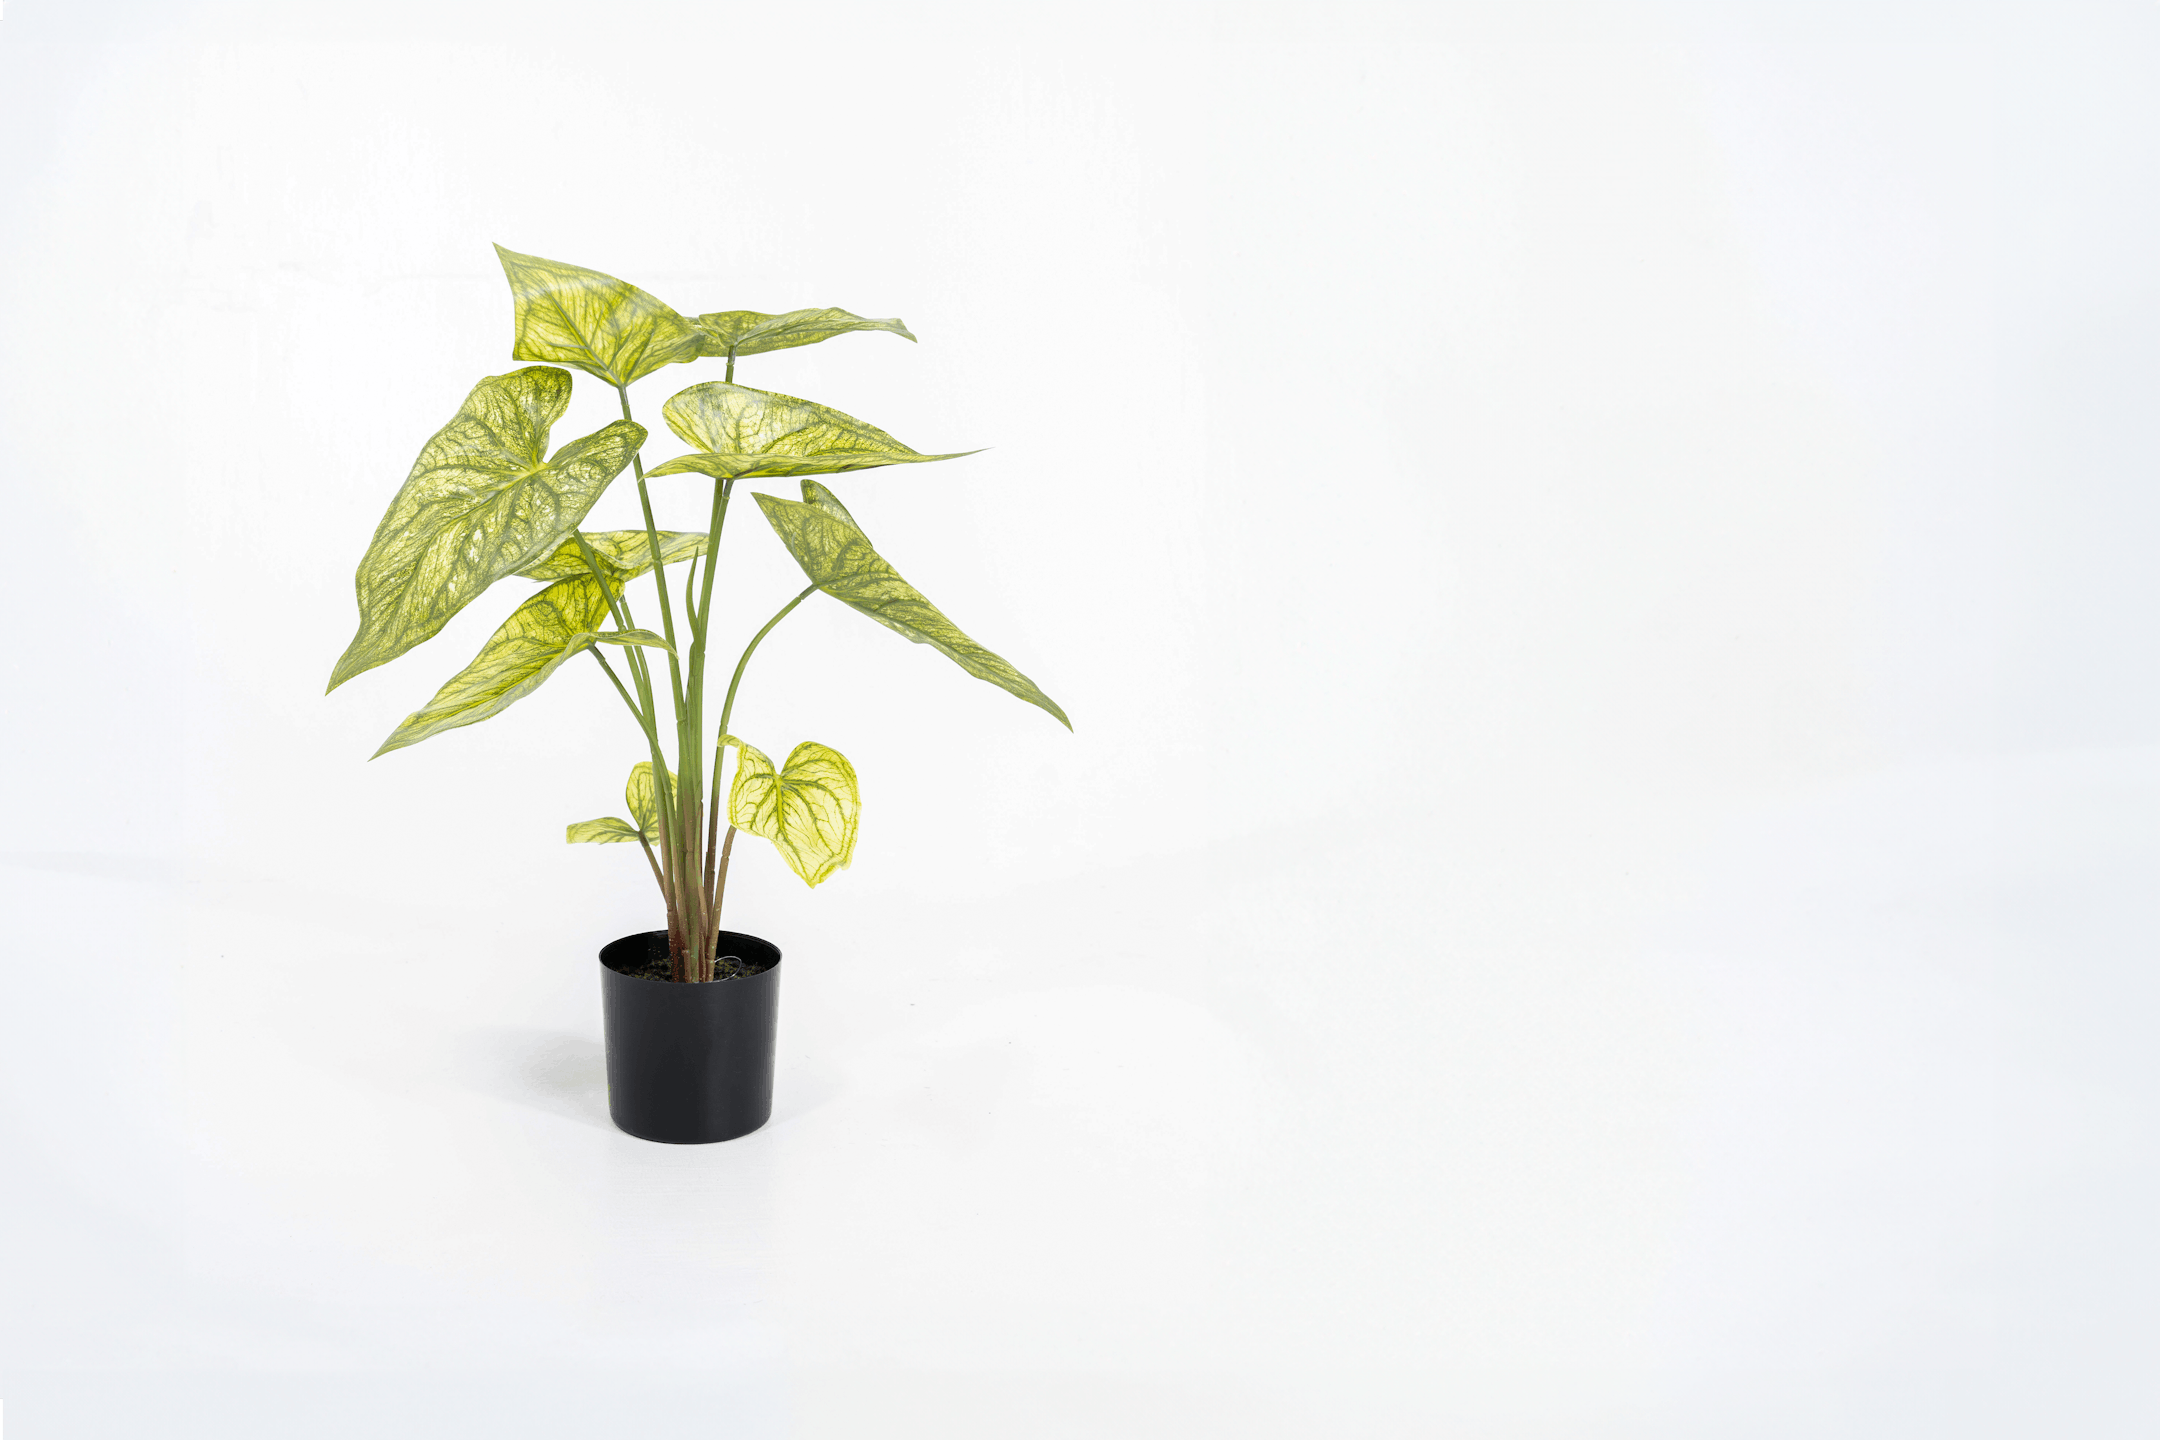 Artificial green caladium houseplant